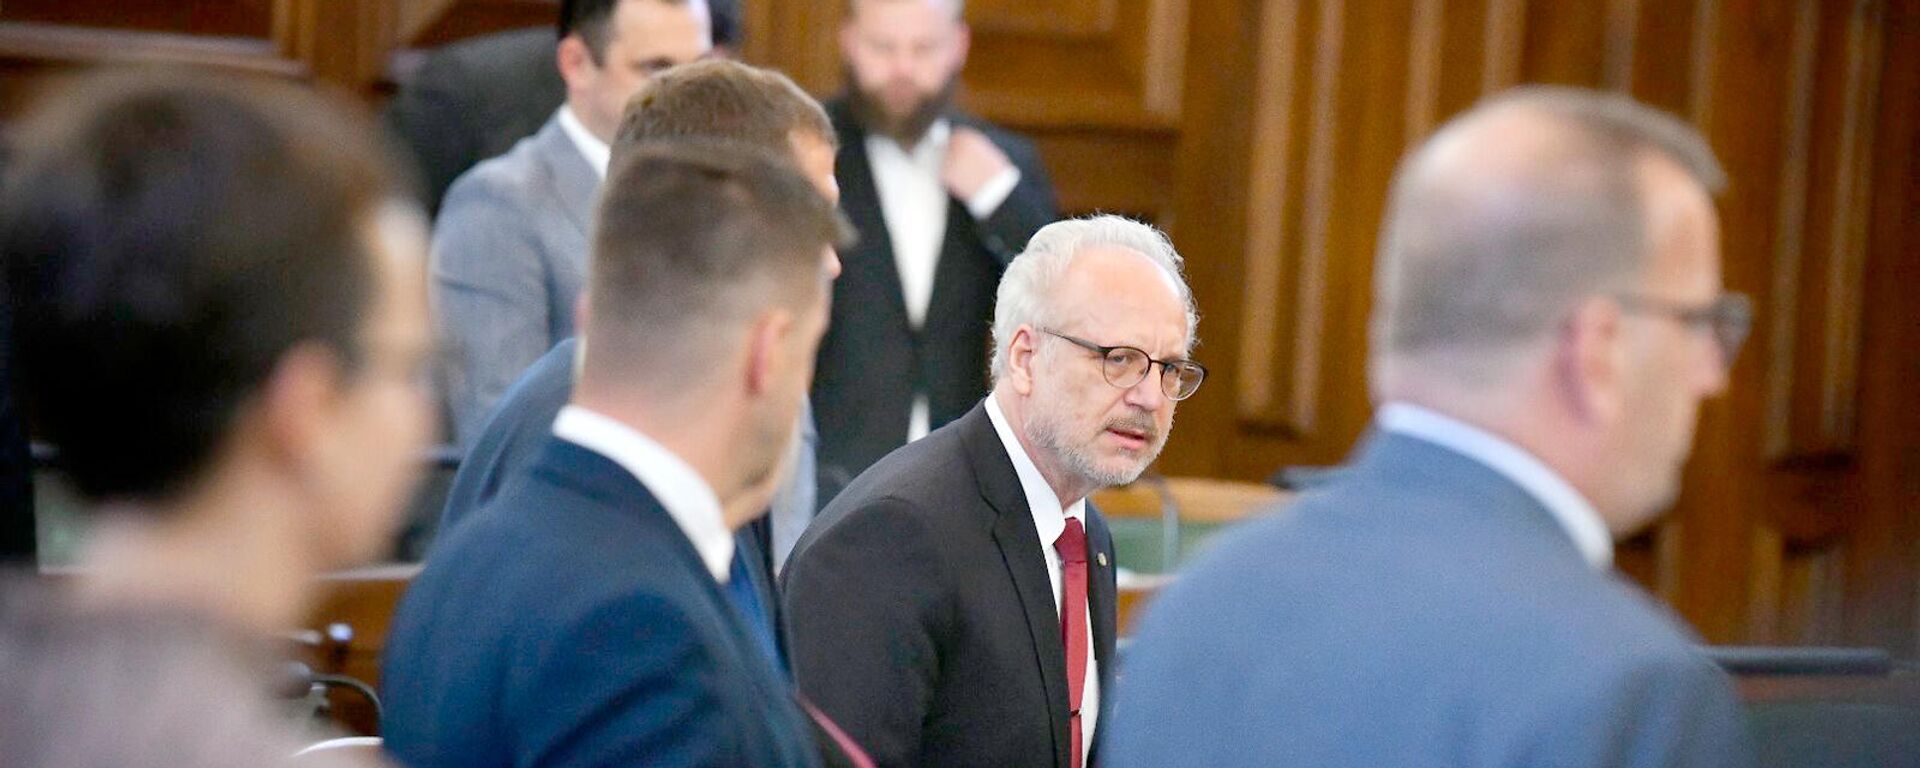 Президент Латвии Эгилс Левитс на первом очном заседании Сейма, 2 сентября 2021 года - Sputnik Латвия, 1920, 17.11.2021